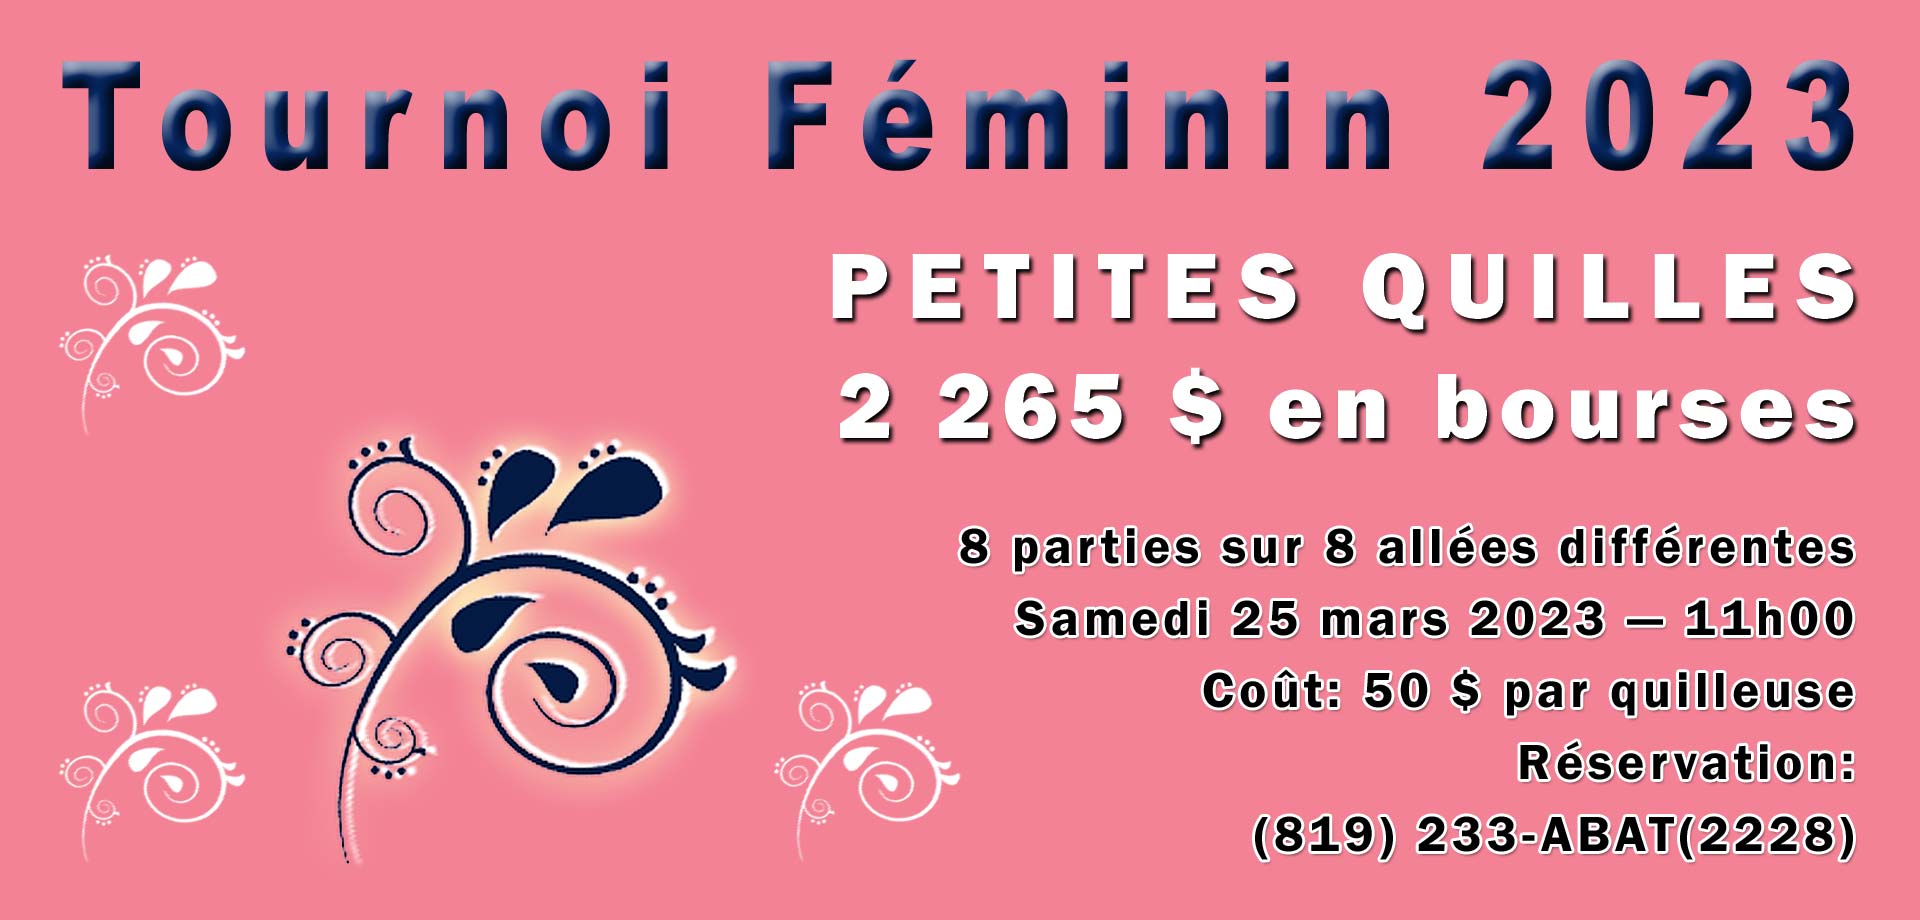 Tournoi Féminin Quilles St-Grégoire